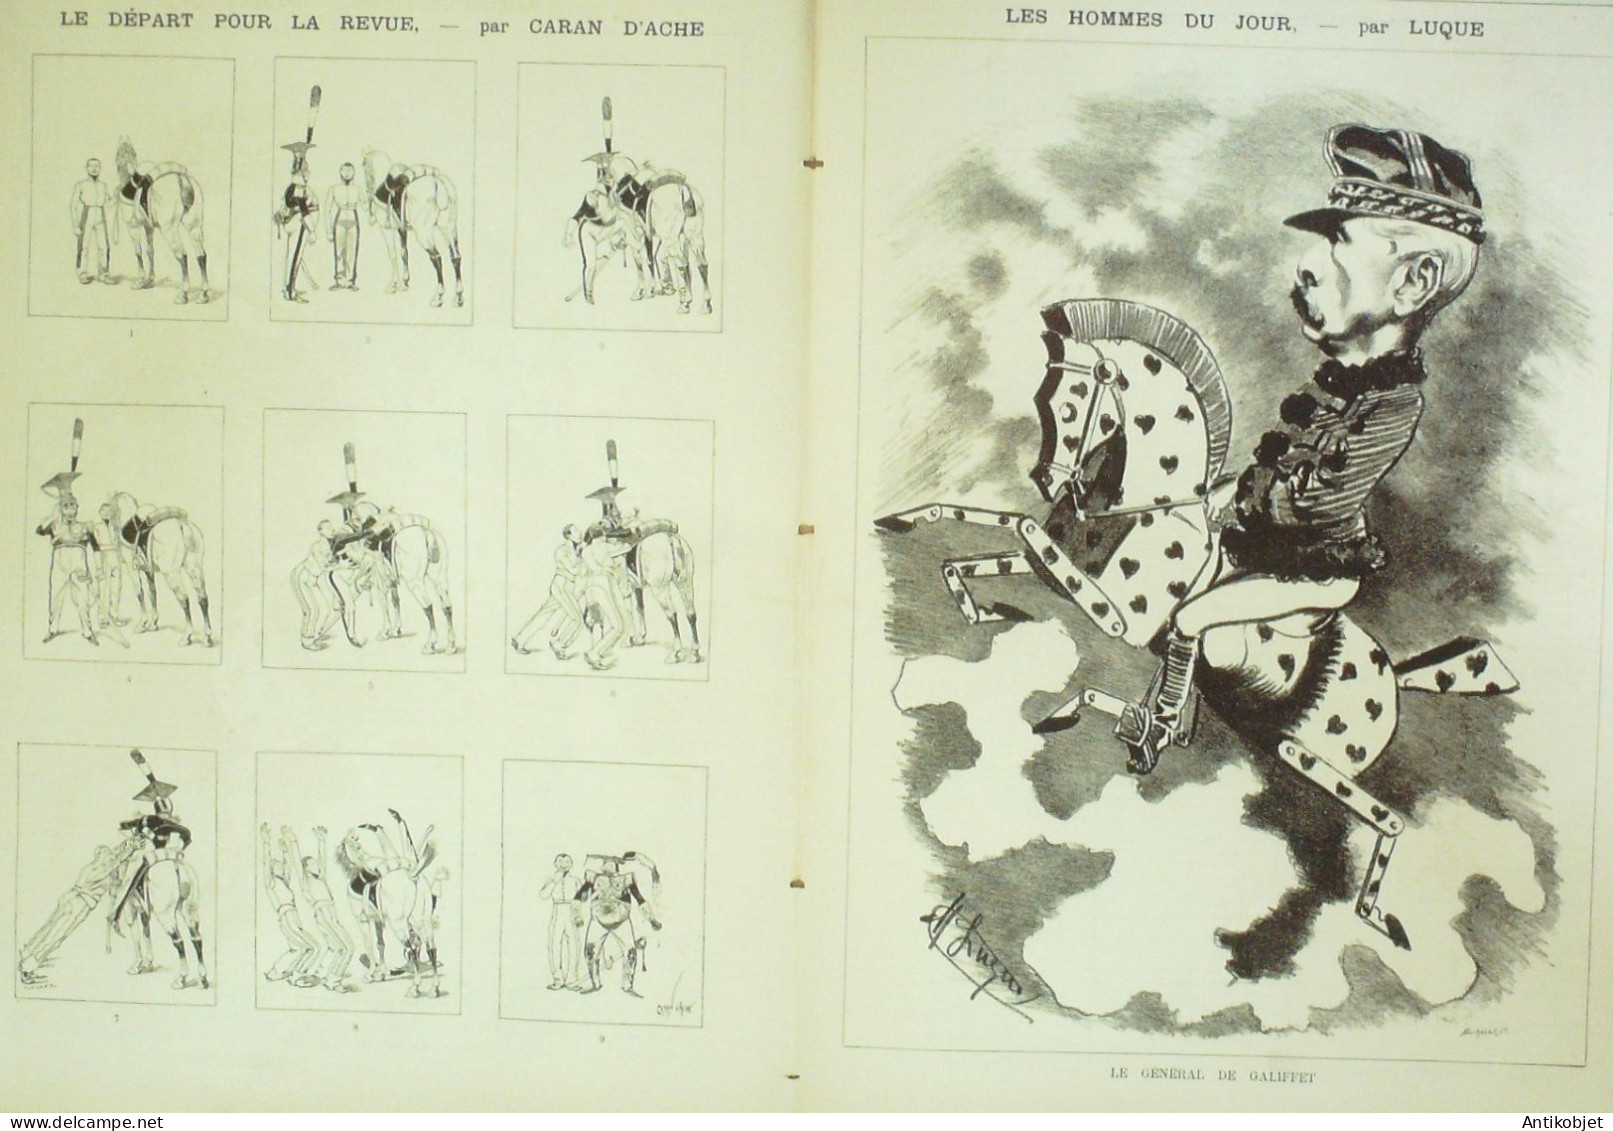 La Caricature 1885 N°298 Amour Jaloux Caran D'Ache Gino Job De Galifet Paar Luque Caran D'Ache - Magazines - Before 1900